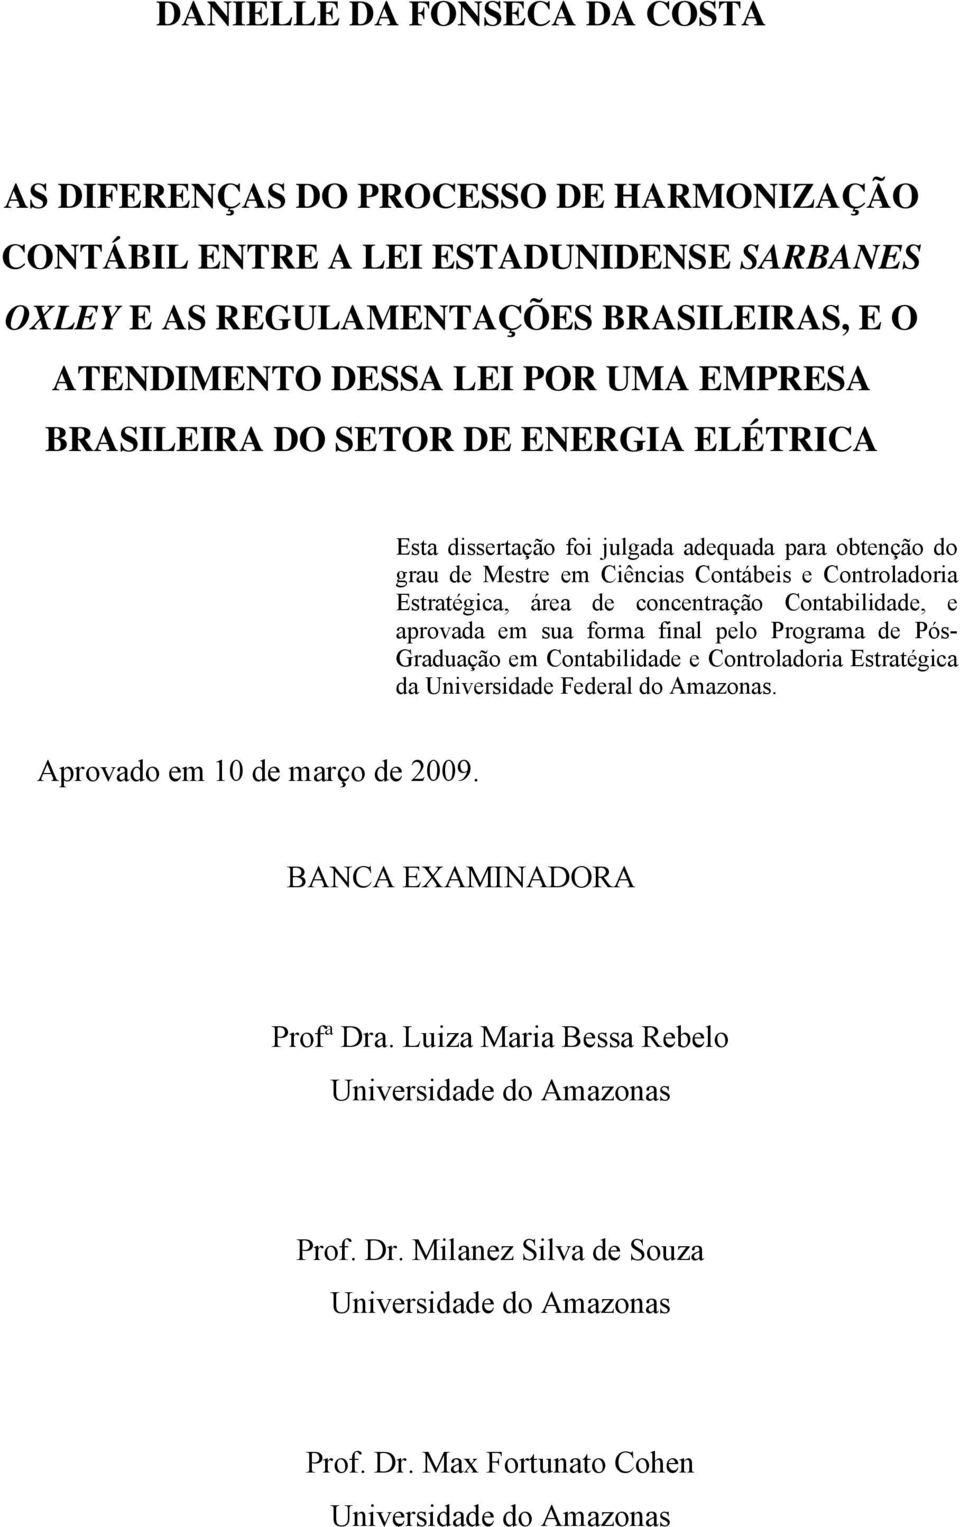 Contabilidade, e aprovada em sua forma final pelo Programa de Pós- Graduação em Contabilidade e Controladoria Estratégica da Universidade Federal do Amazonas. Aprovado em 10 de março de 2009.